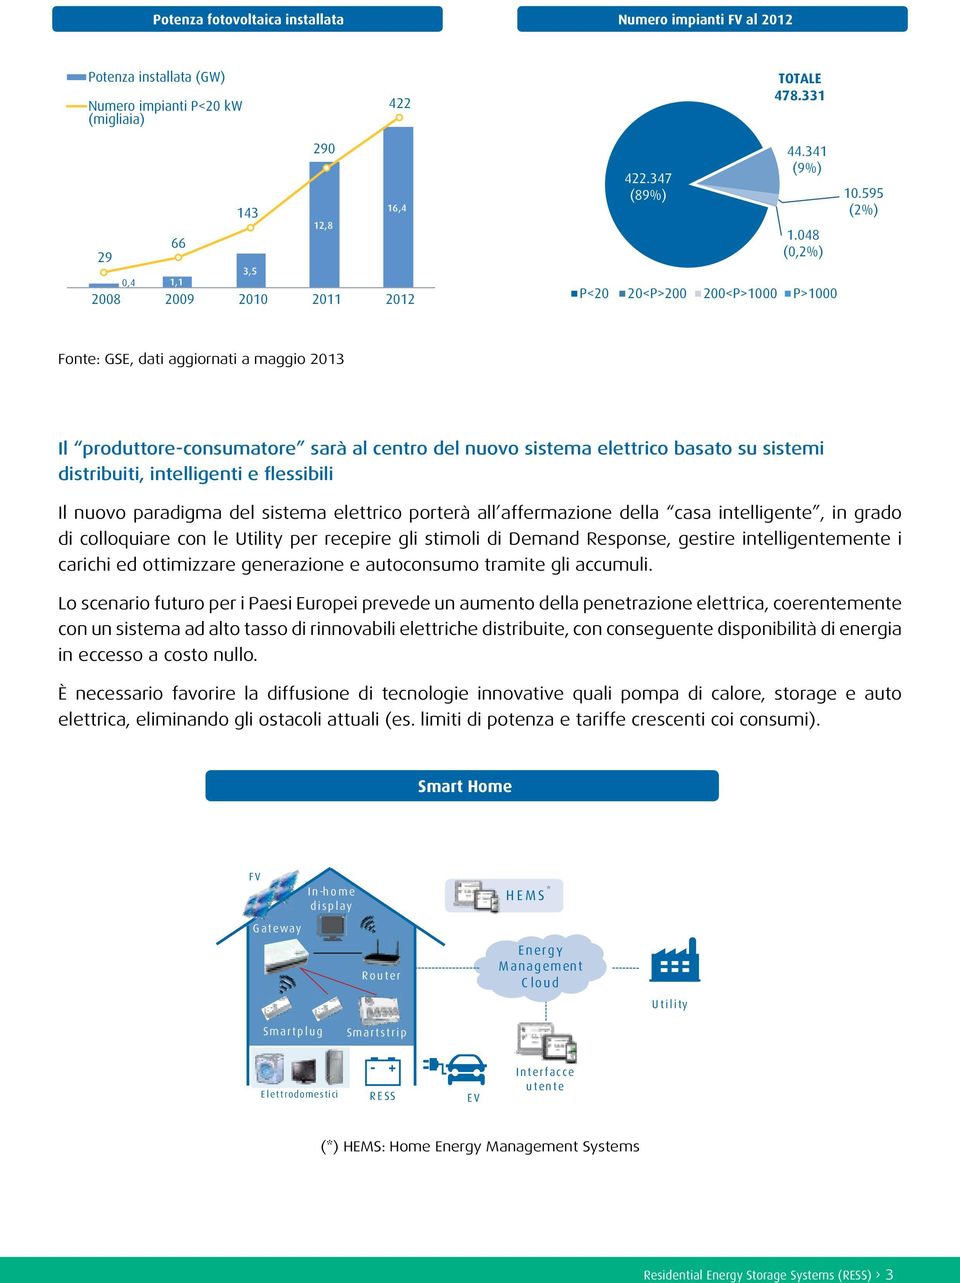 595 (2%) Fonte: GSE, dati aggiornati a maggio 2013 Il produttore-consumatore sarà al centro del nuovo sistema elettrico basato su sistemi distribuiti, intelligenti e flessibili Il nuovo paradigma del